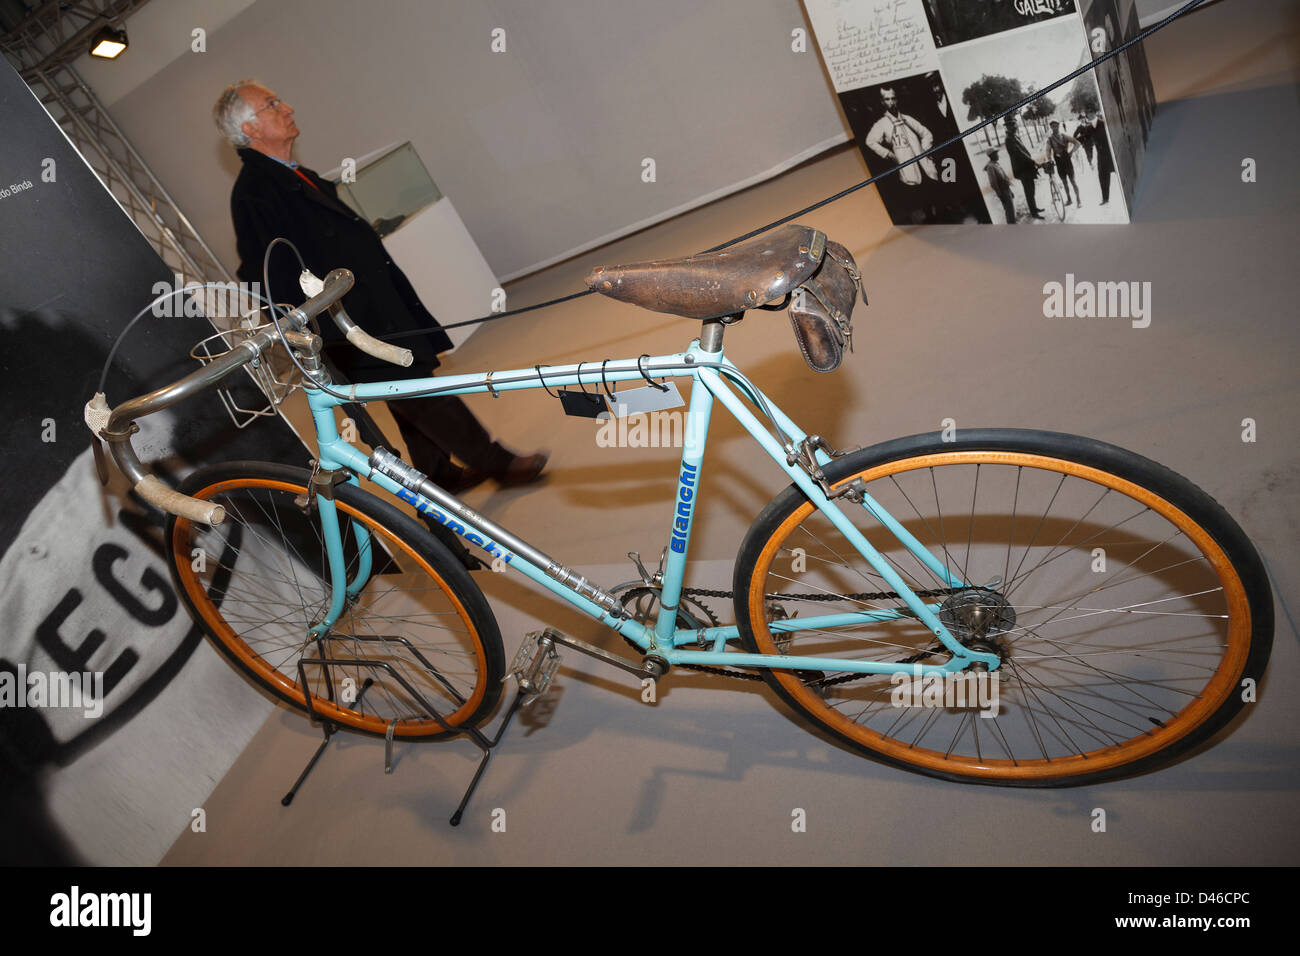 Bianchi bike immagini e fotografie stock ad alta risoluzione - Alamy